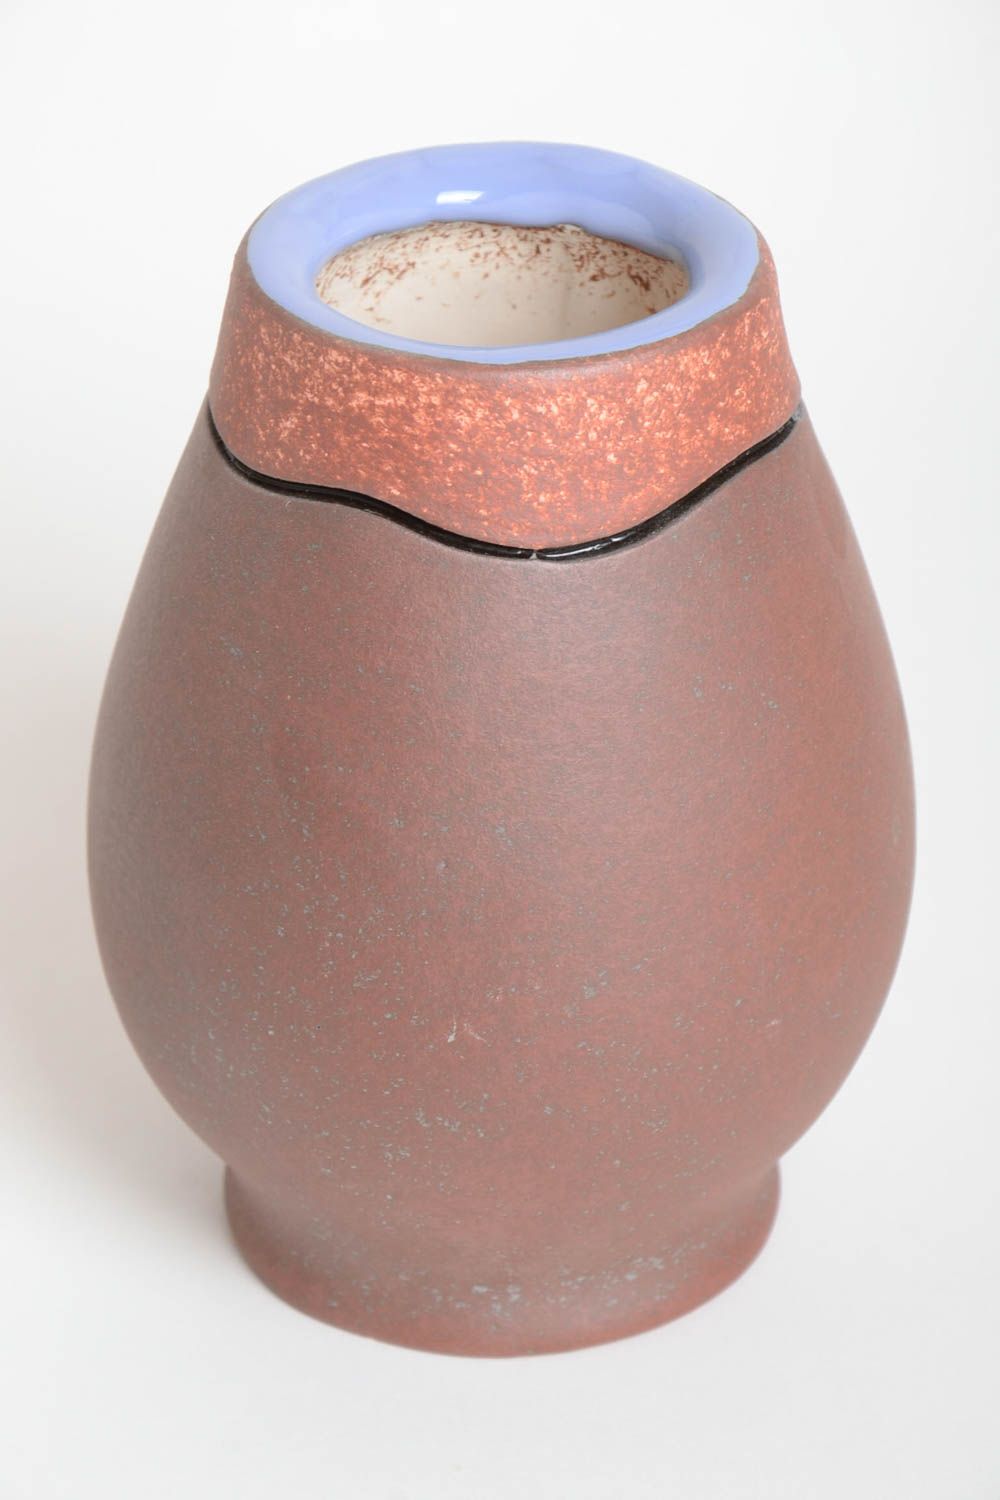 Handmade Keramik Vase Haus Deko hohe ausgefallene Vase schön originell 800 ml  foto 5